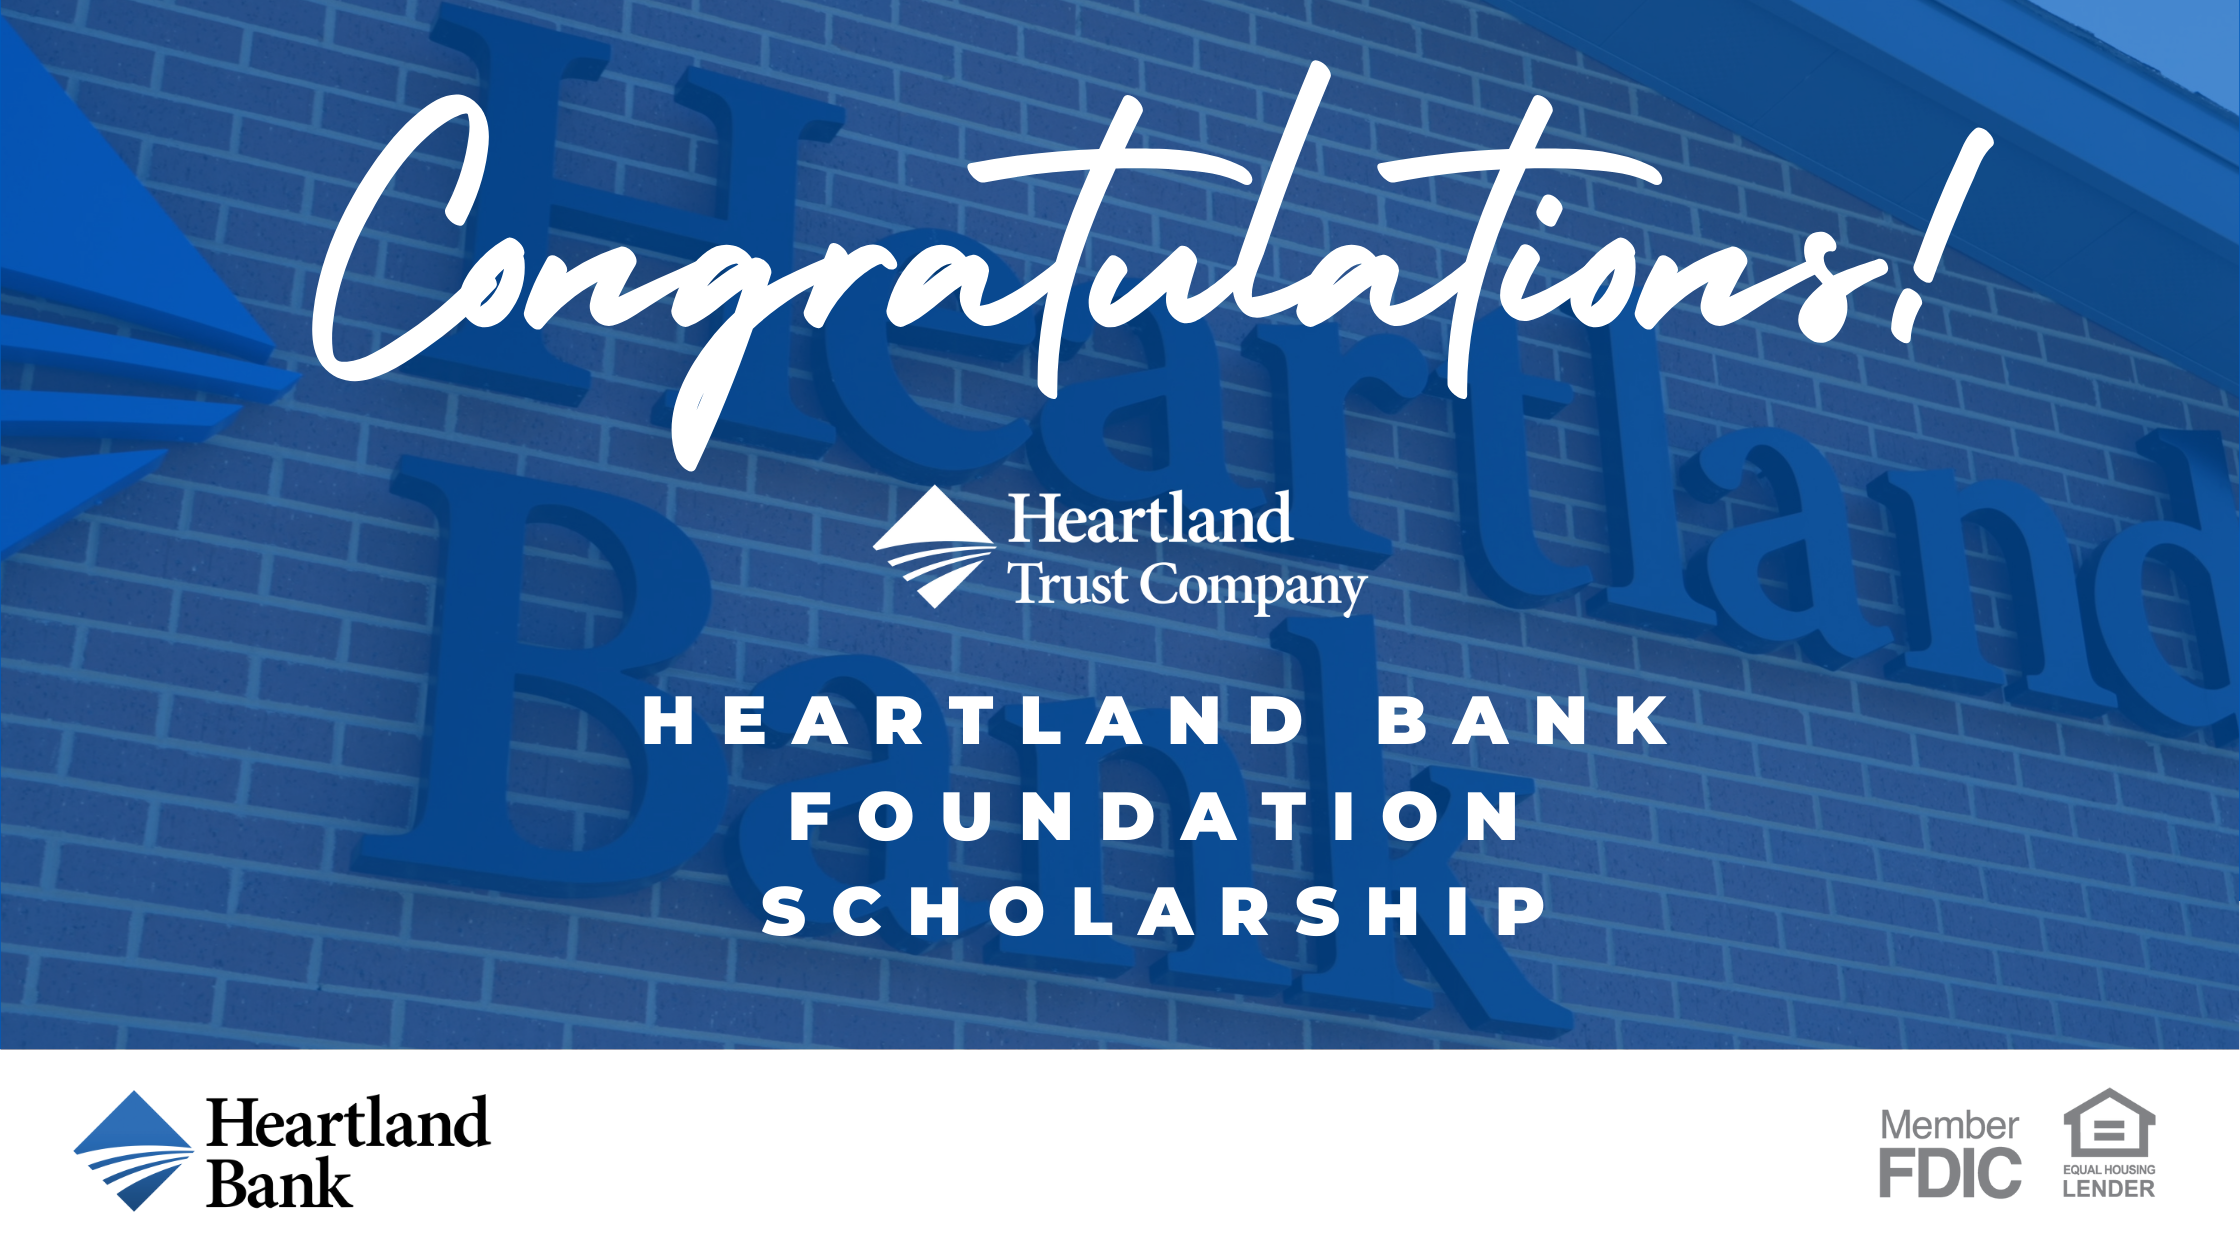 Congratulations to Heartland Bank Foundation Scholarship Recipients